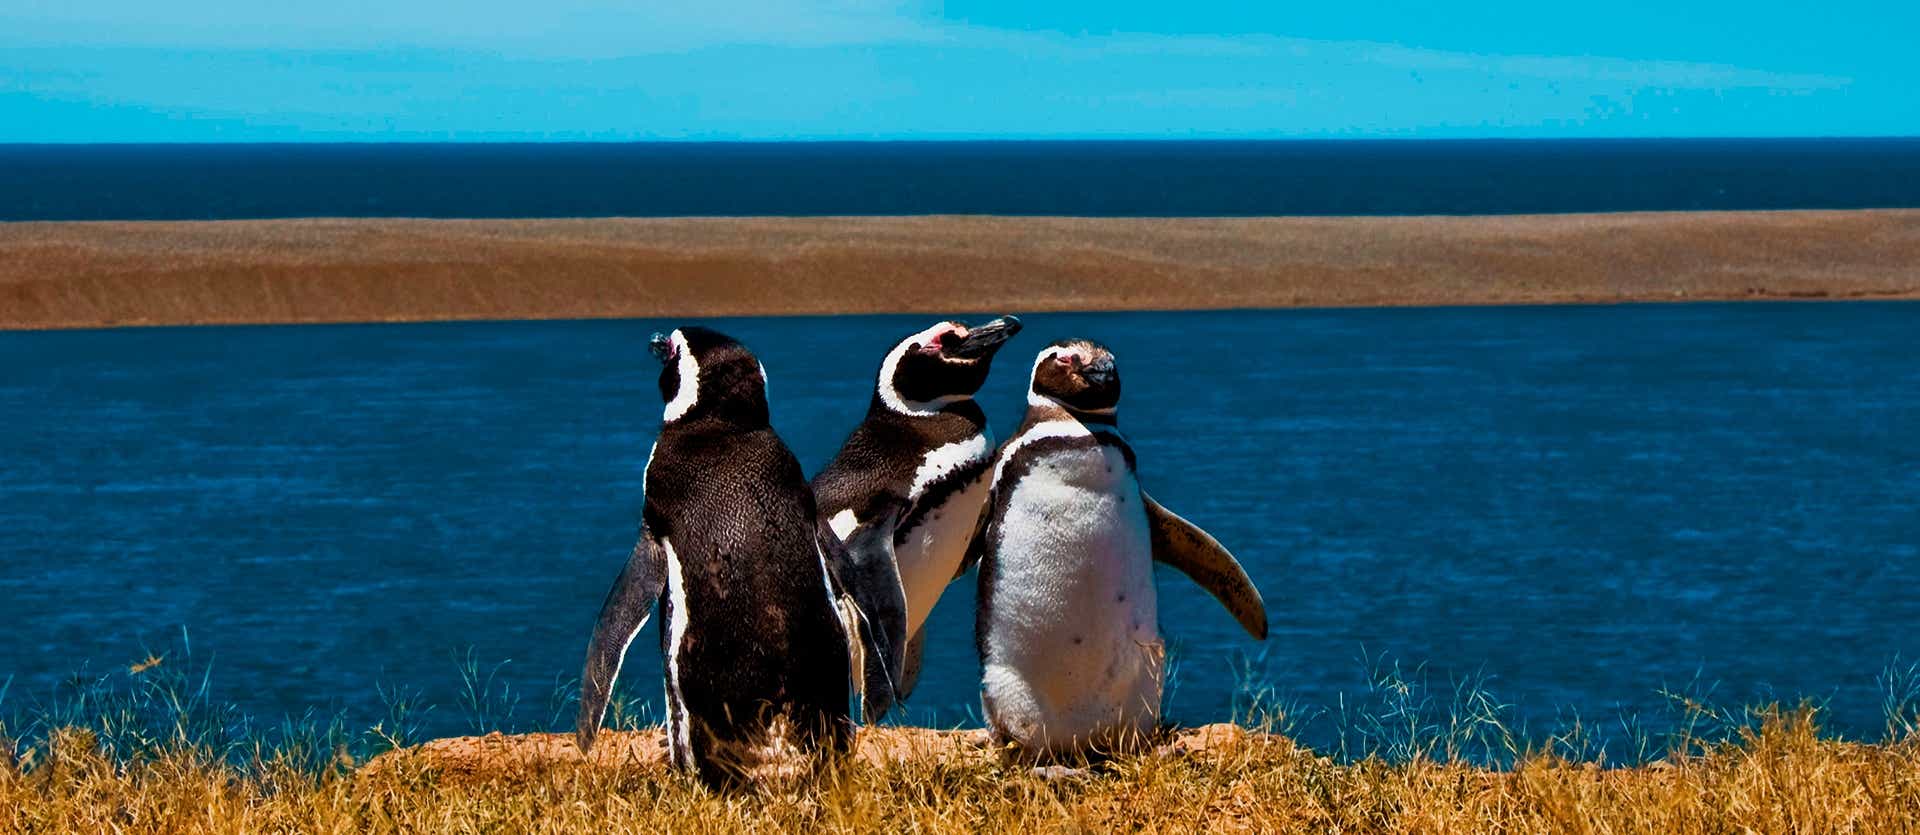 Pingüinos de Magallanes <span class="iconos separador"></span> Península Valdés